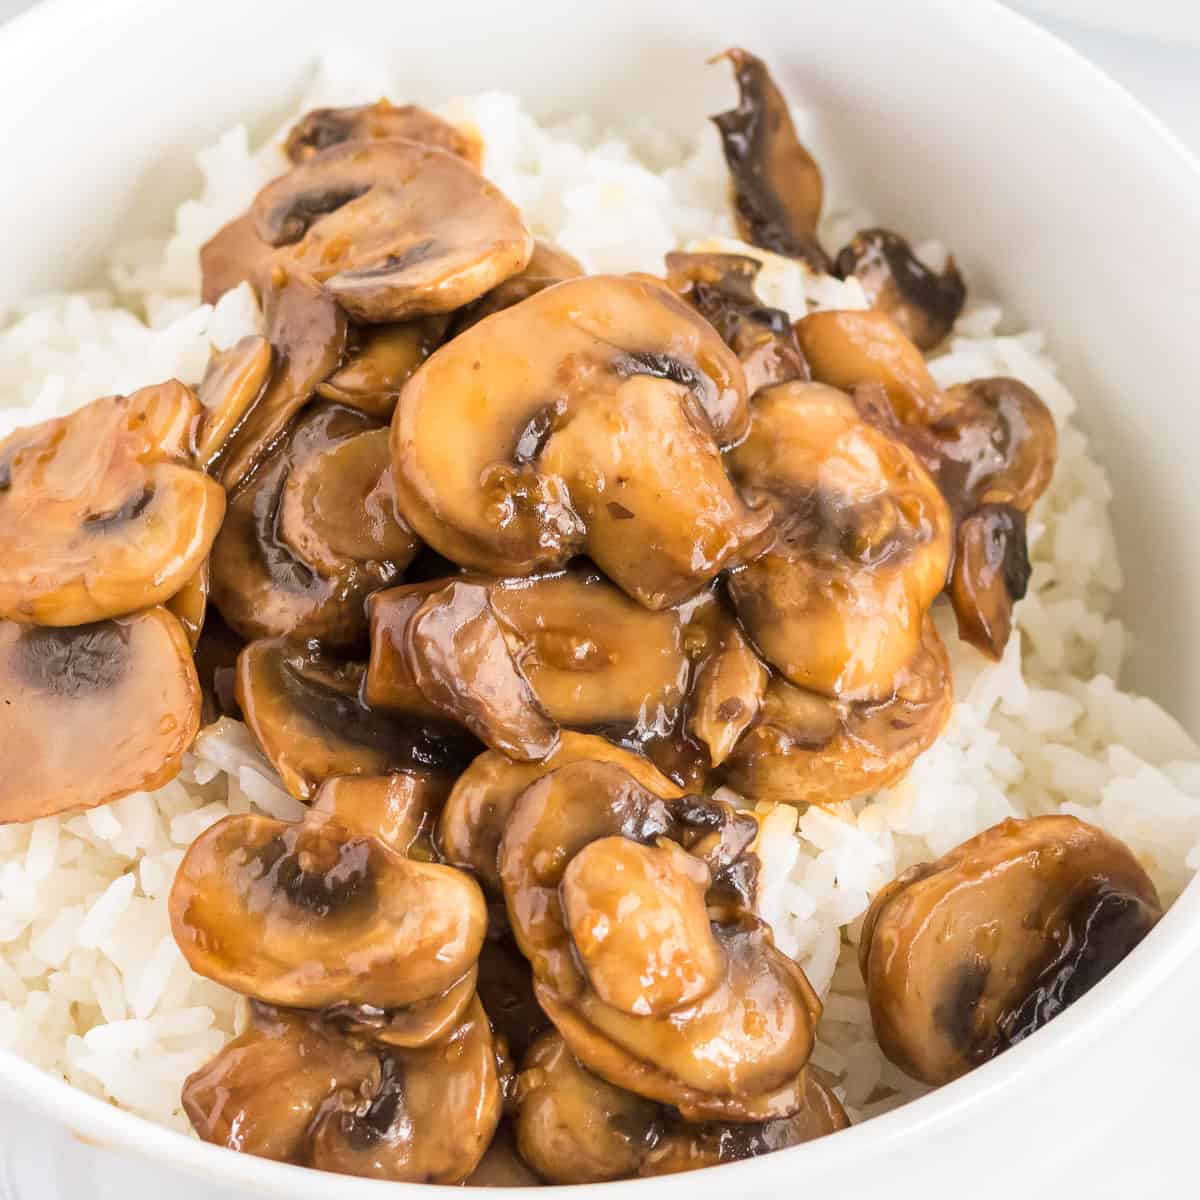 teriyaki mushrooms over rice in a white bowl